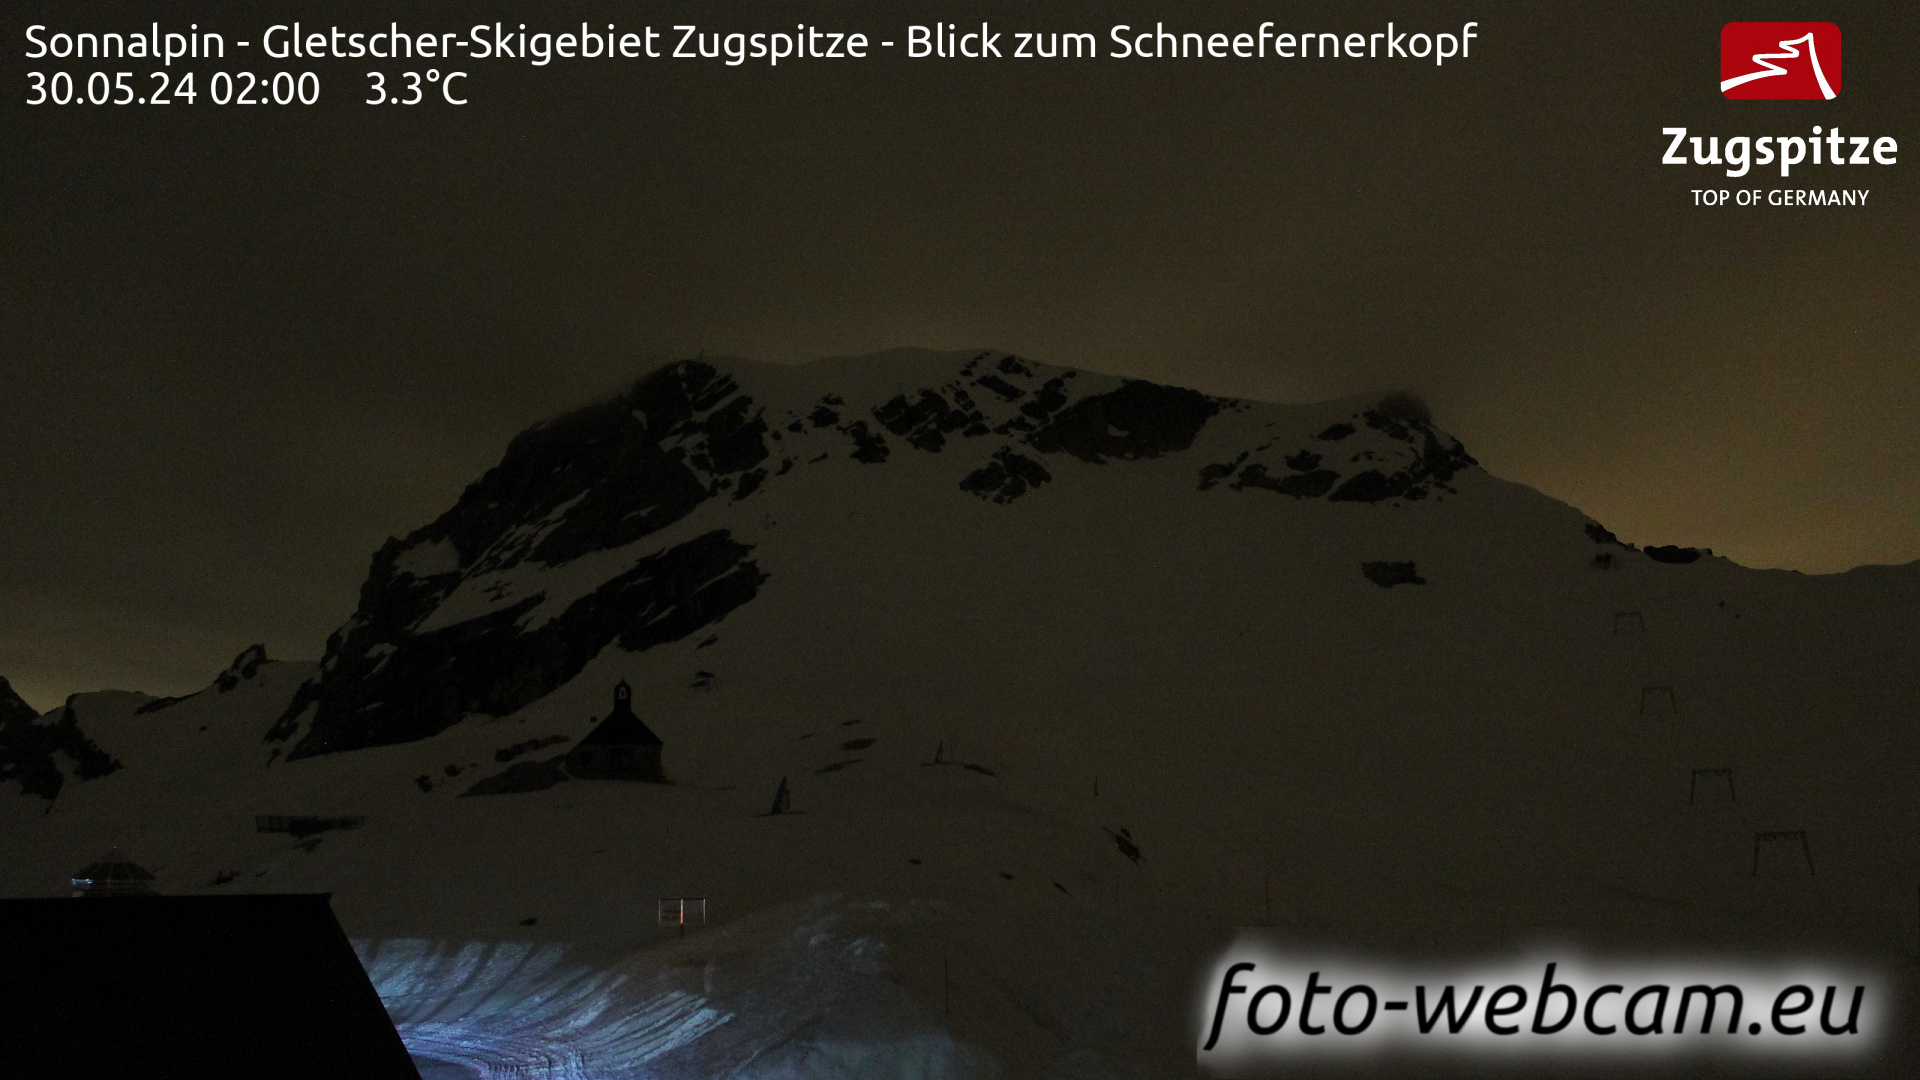 Zugspitze Søn. 02:24